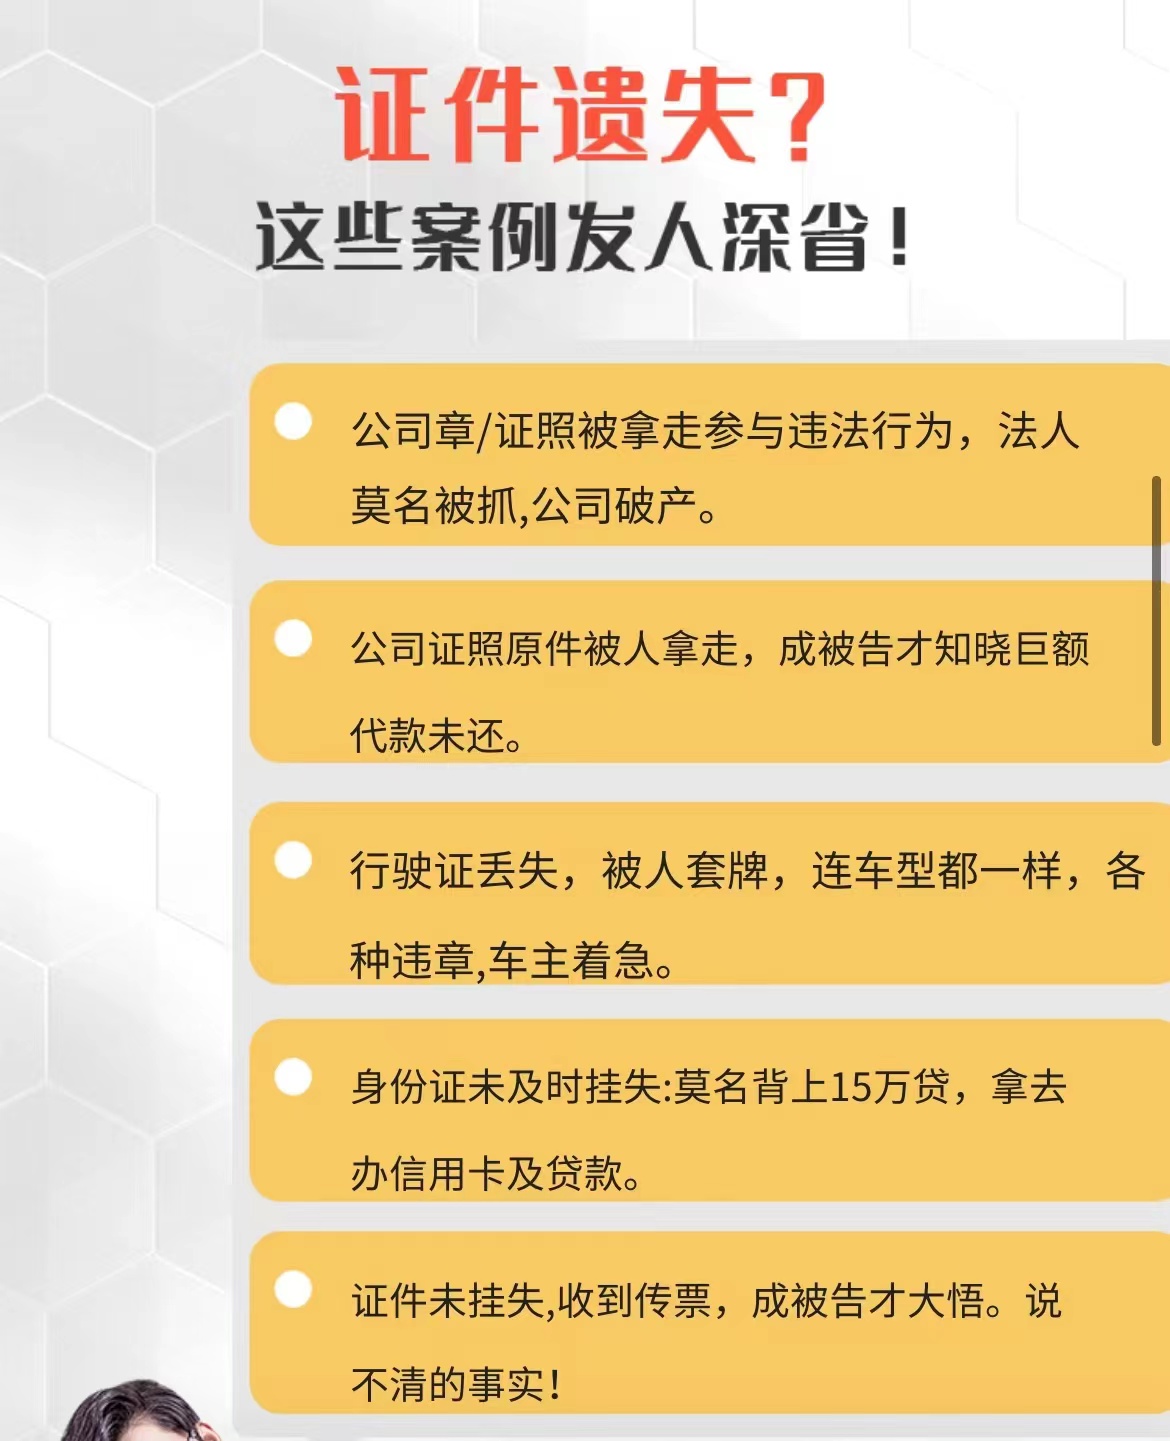 咸丰县债权债务公告转让登报电话/便民登报中心